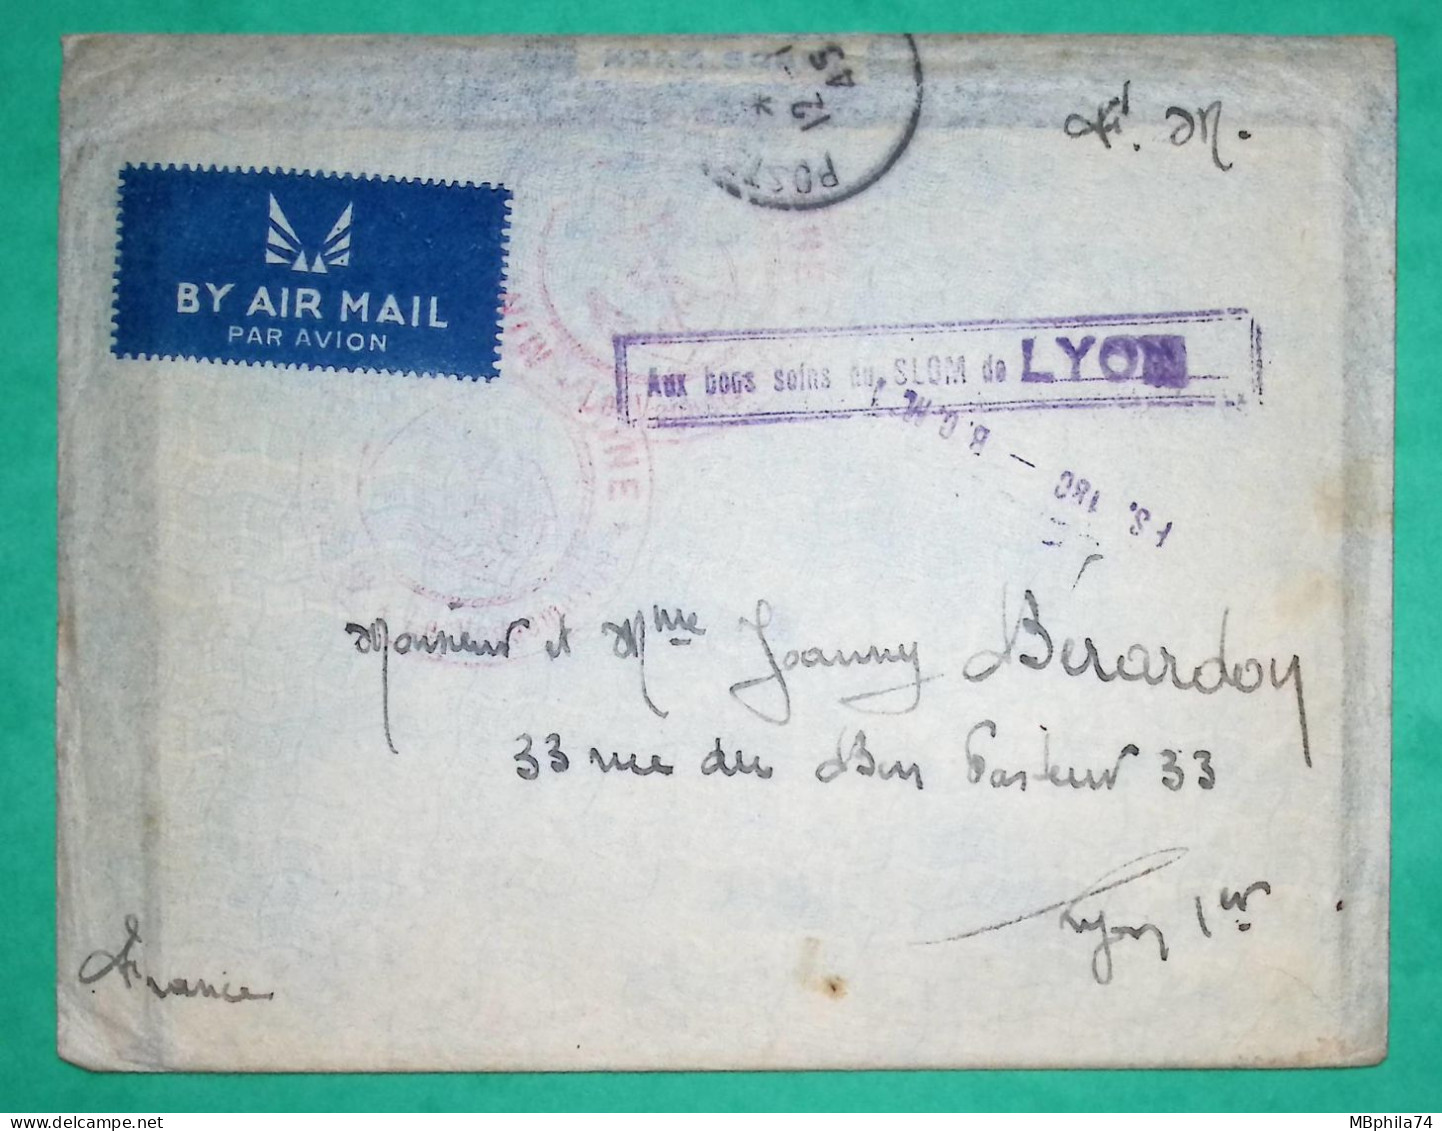 FRANCHISE MILITAIRE FM LETTRE PAR AVION POSTE NAVALE SLOM LYON RHONE 1945 WW2 COVER FRANCE - Military Airmail